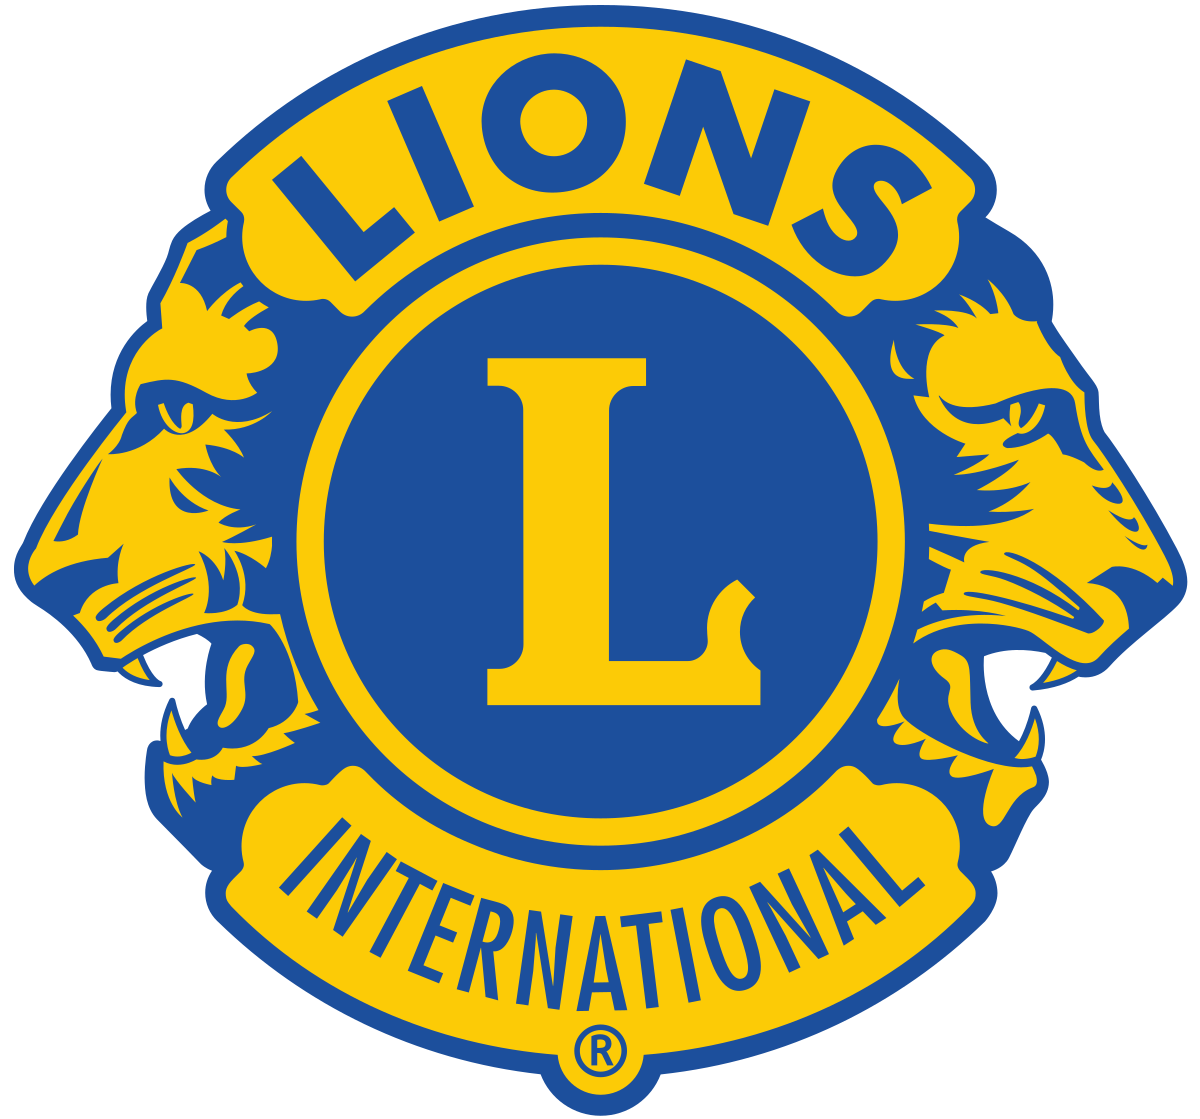 Eden Prairie Lions Club